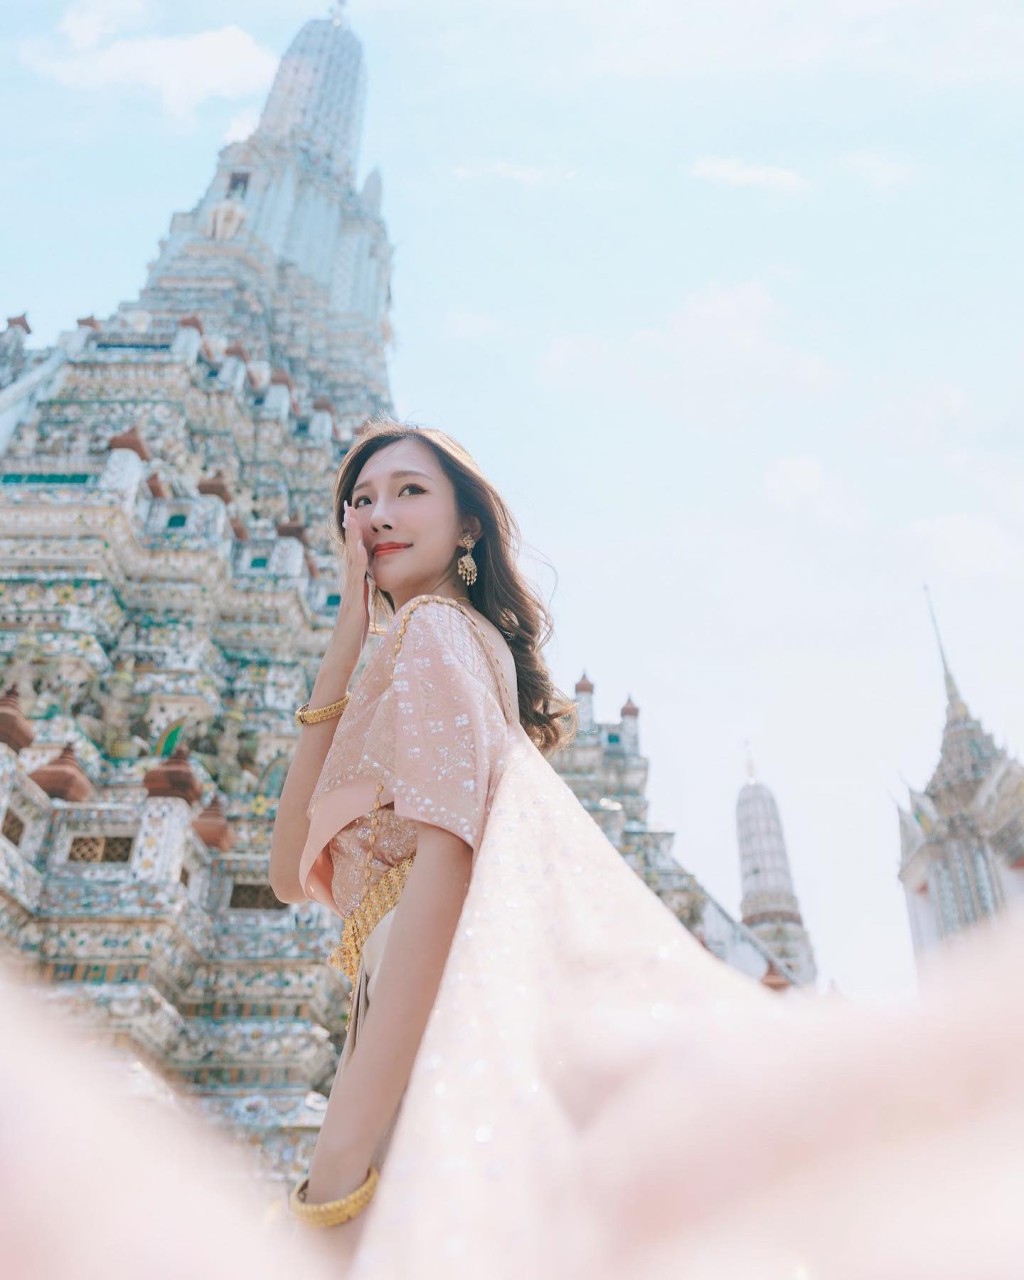 梁允瑜去年都有去过泰国曼谷，还着泰服打卡。